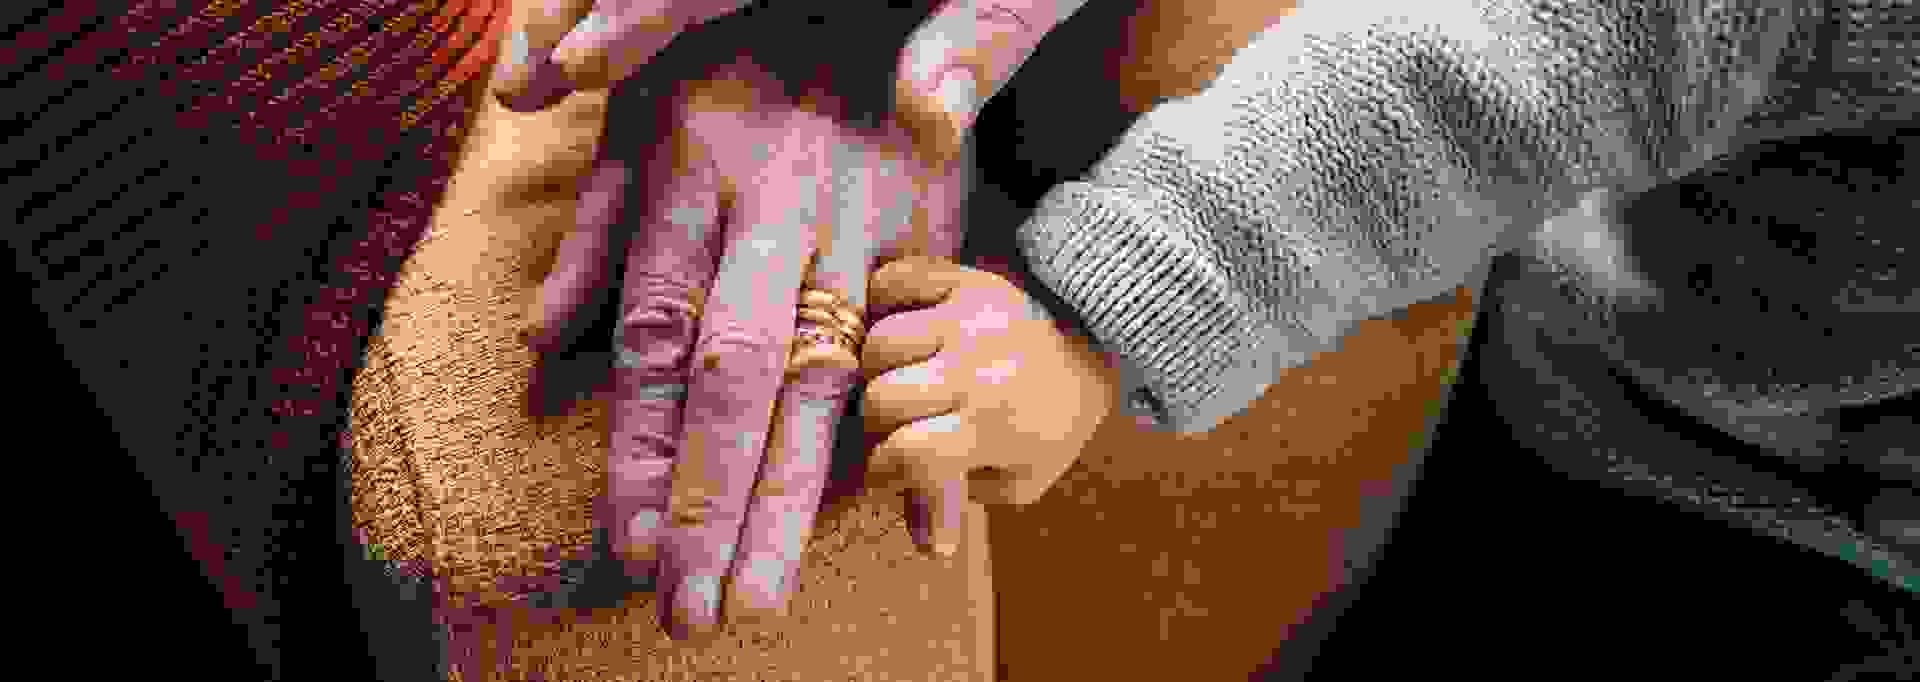 Pienen lapsen käsi iäkkään henkilön kädessä.